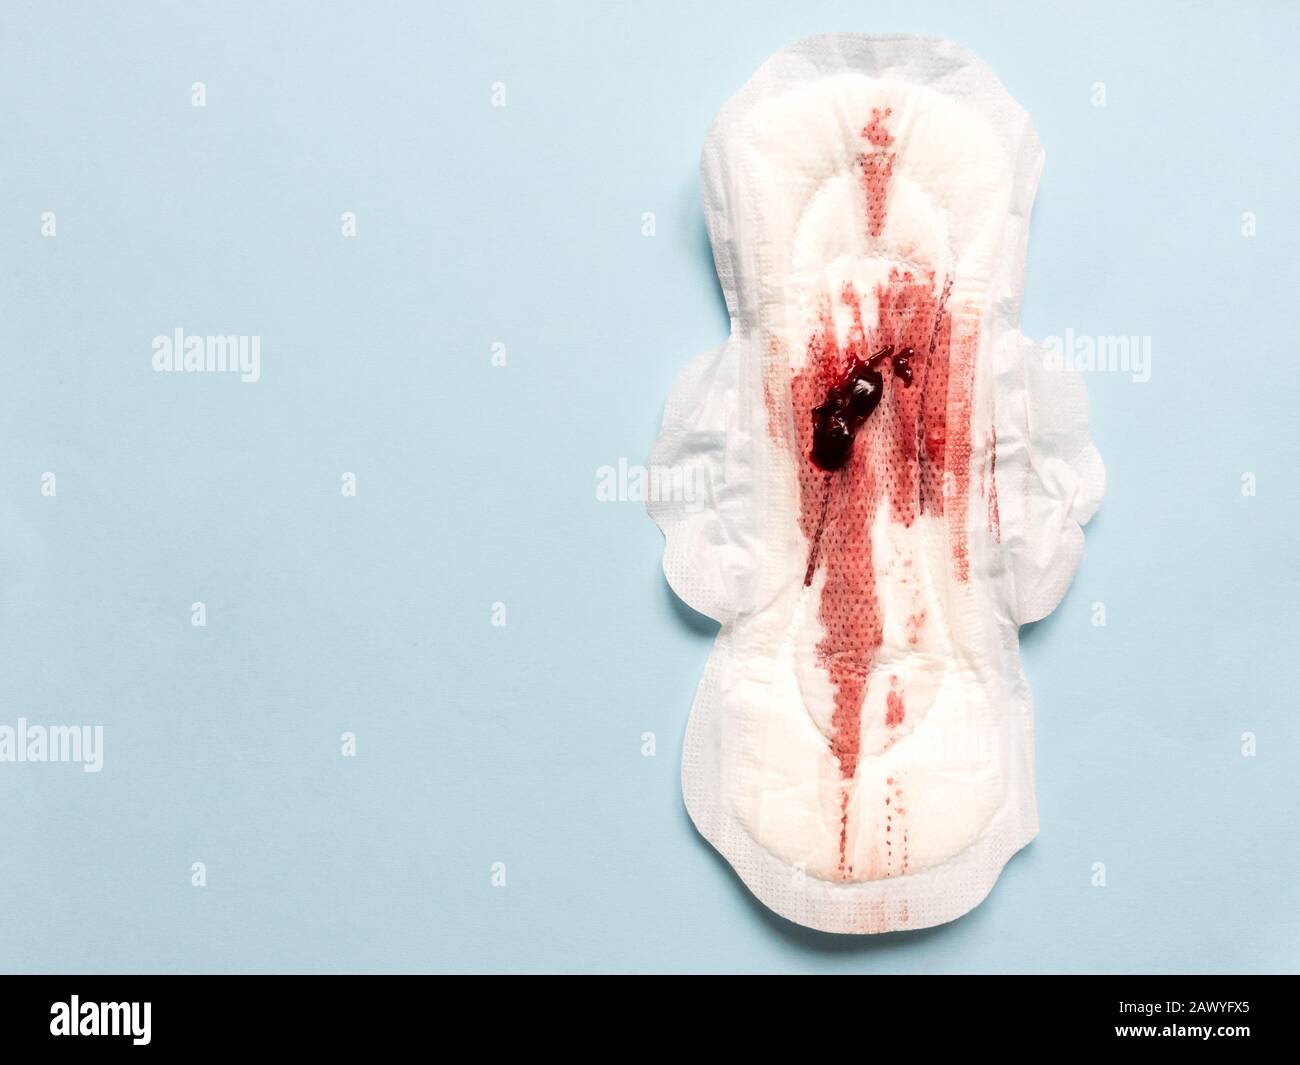 Sintomo di endometriosi, sangue mestruale con coaguli di sangue su un assorbente igienico. Foto Stock